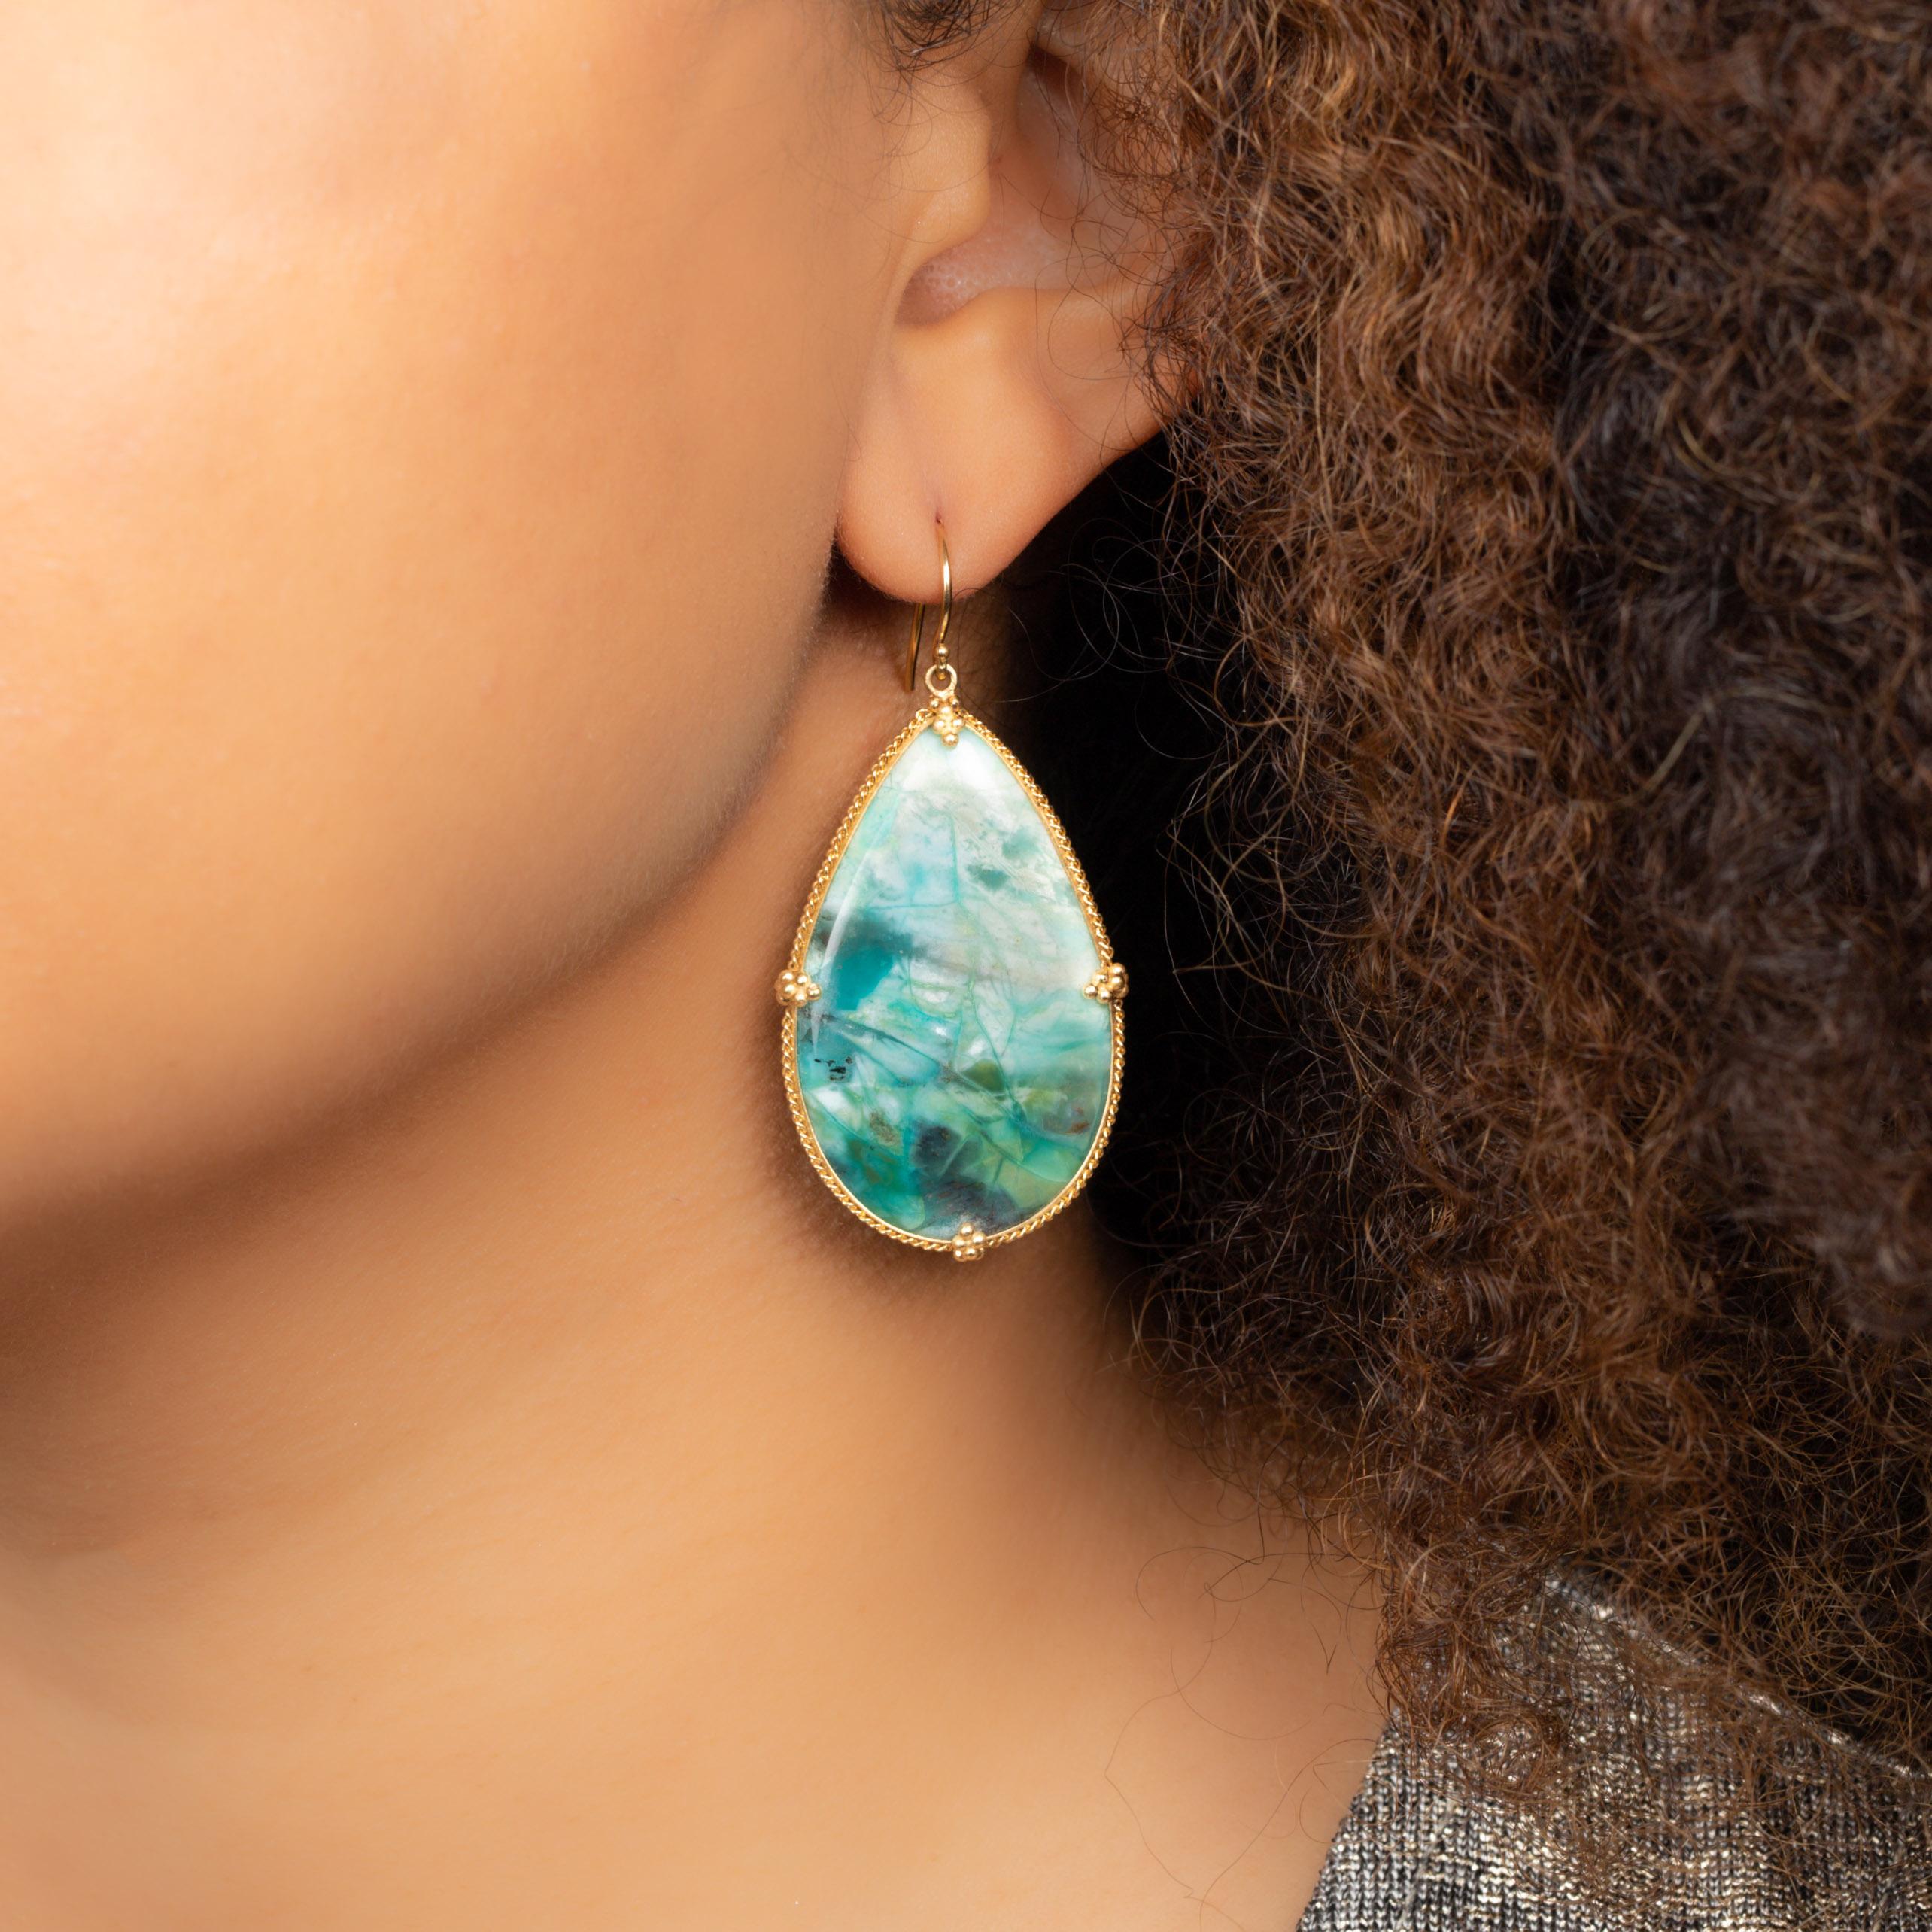 Diese außergewöhnlichen Ohrringe bestehen aus großen, üppigen Tränen aus versteinertem Holz mit blauem Opal. Es ist ein unverwechselbares und ungewöhnliches MATERIAL, ein fesselndes Gestein in der Farbe einer tropischen Lagune, in der sich Licht und